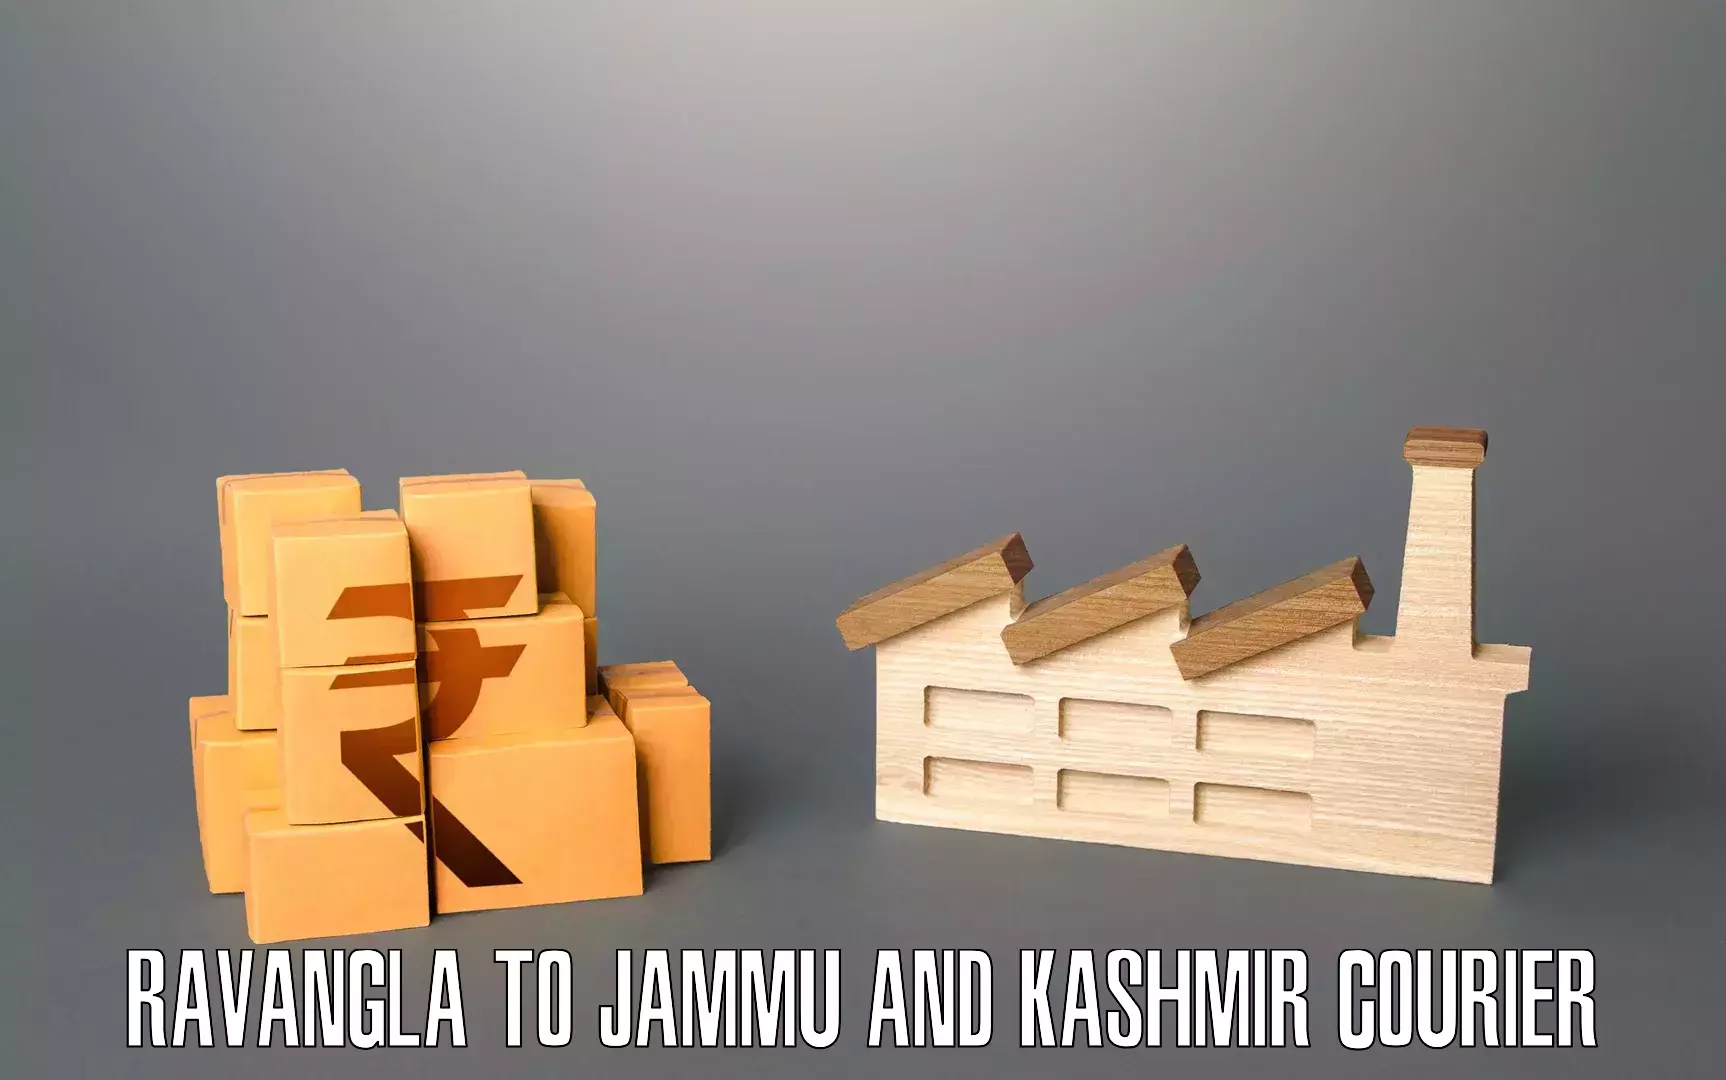 Home relocation experts Ravangla to IIT Jammu